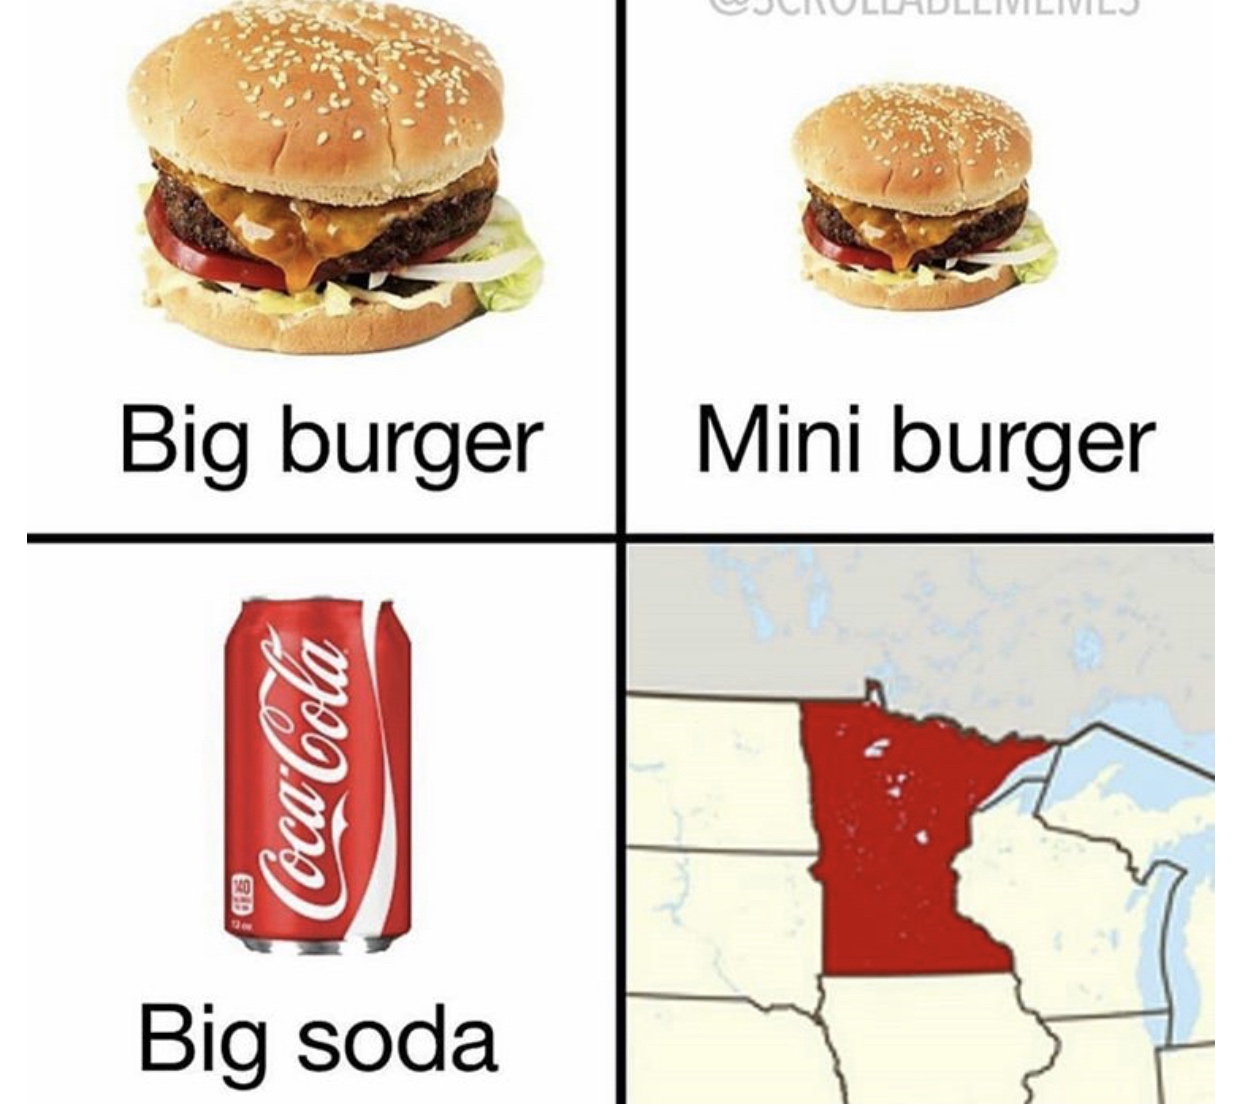 coca cola - Big burger Mini burger Coca Cola Big soda